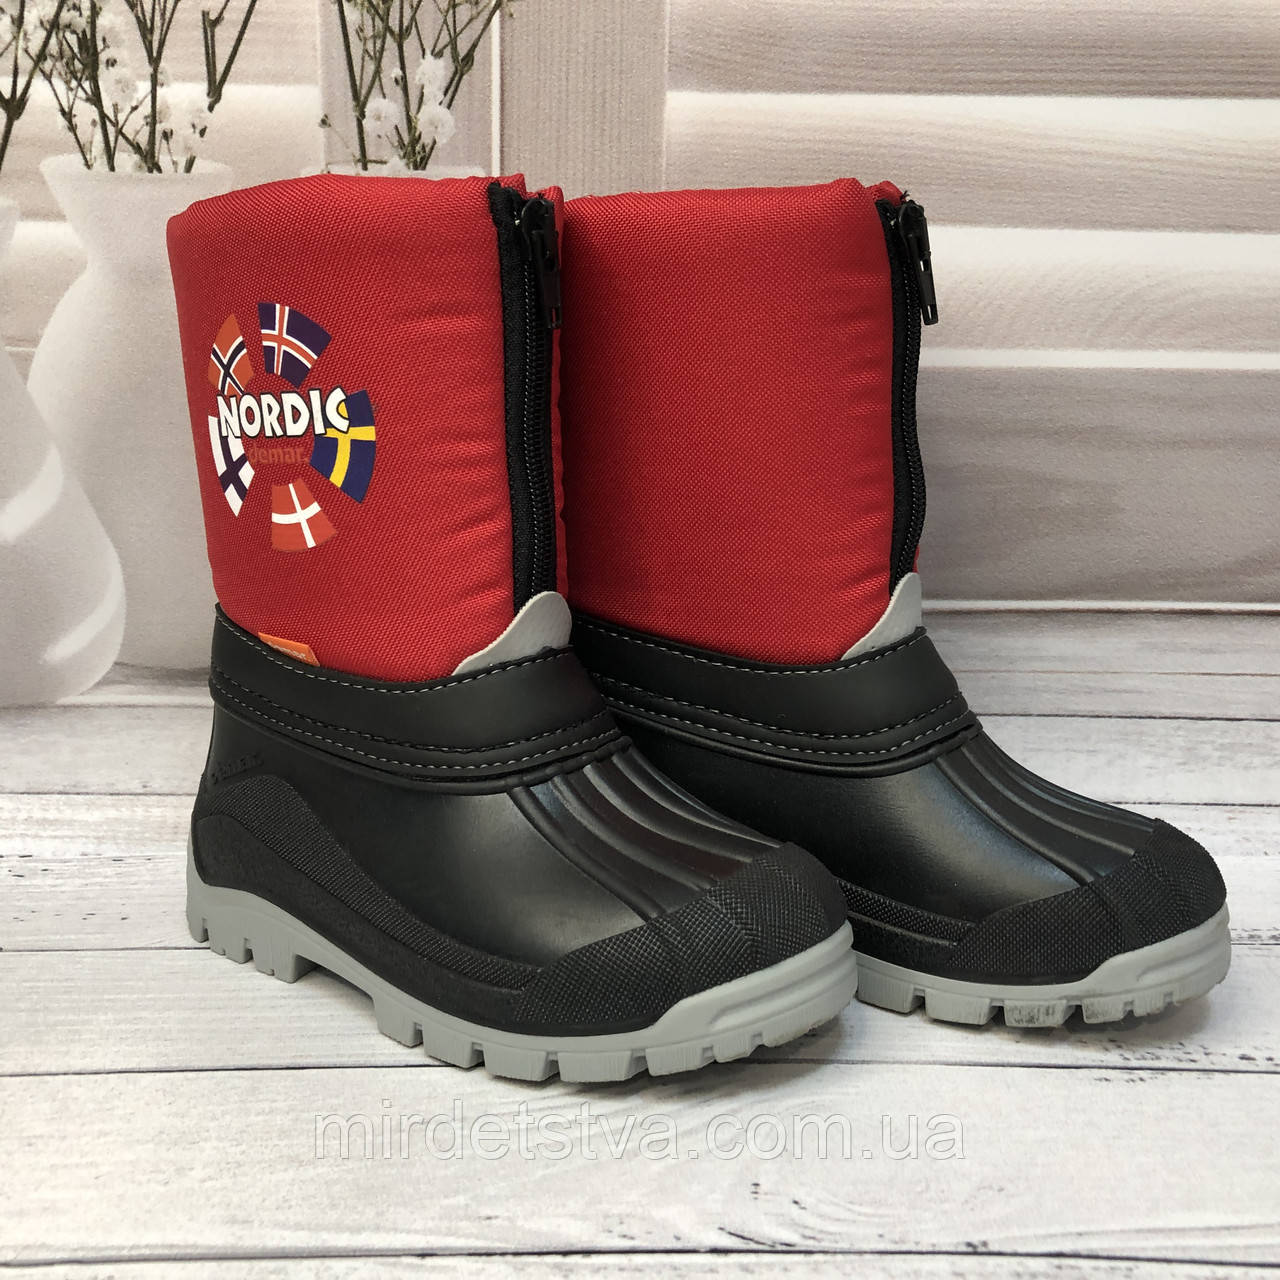 Зимові гумові чоботи на хлопчика Demar New Nordic червоні розмір 25-26